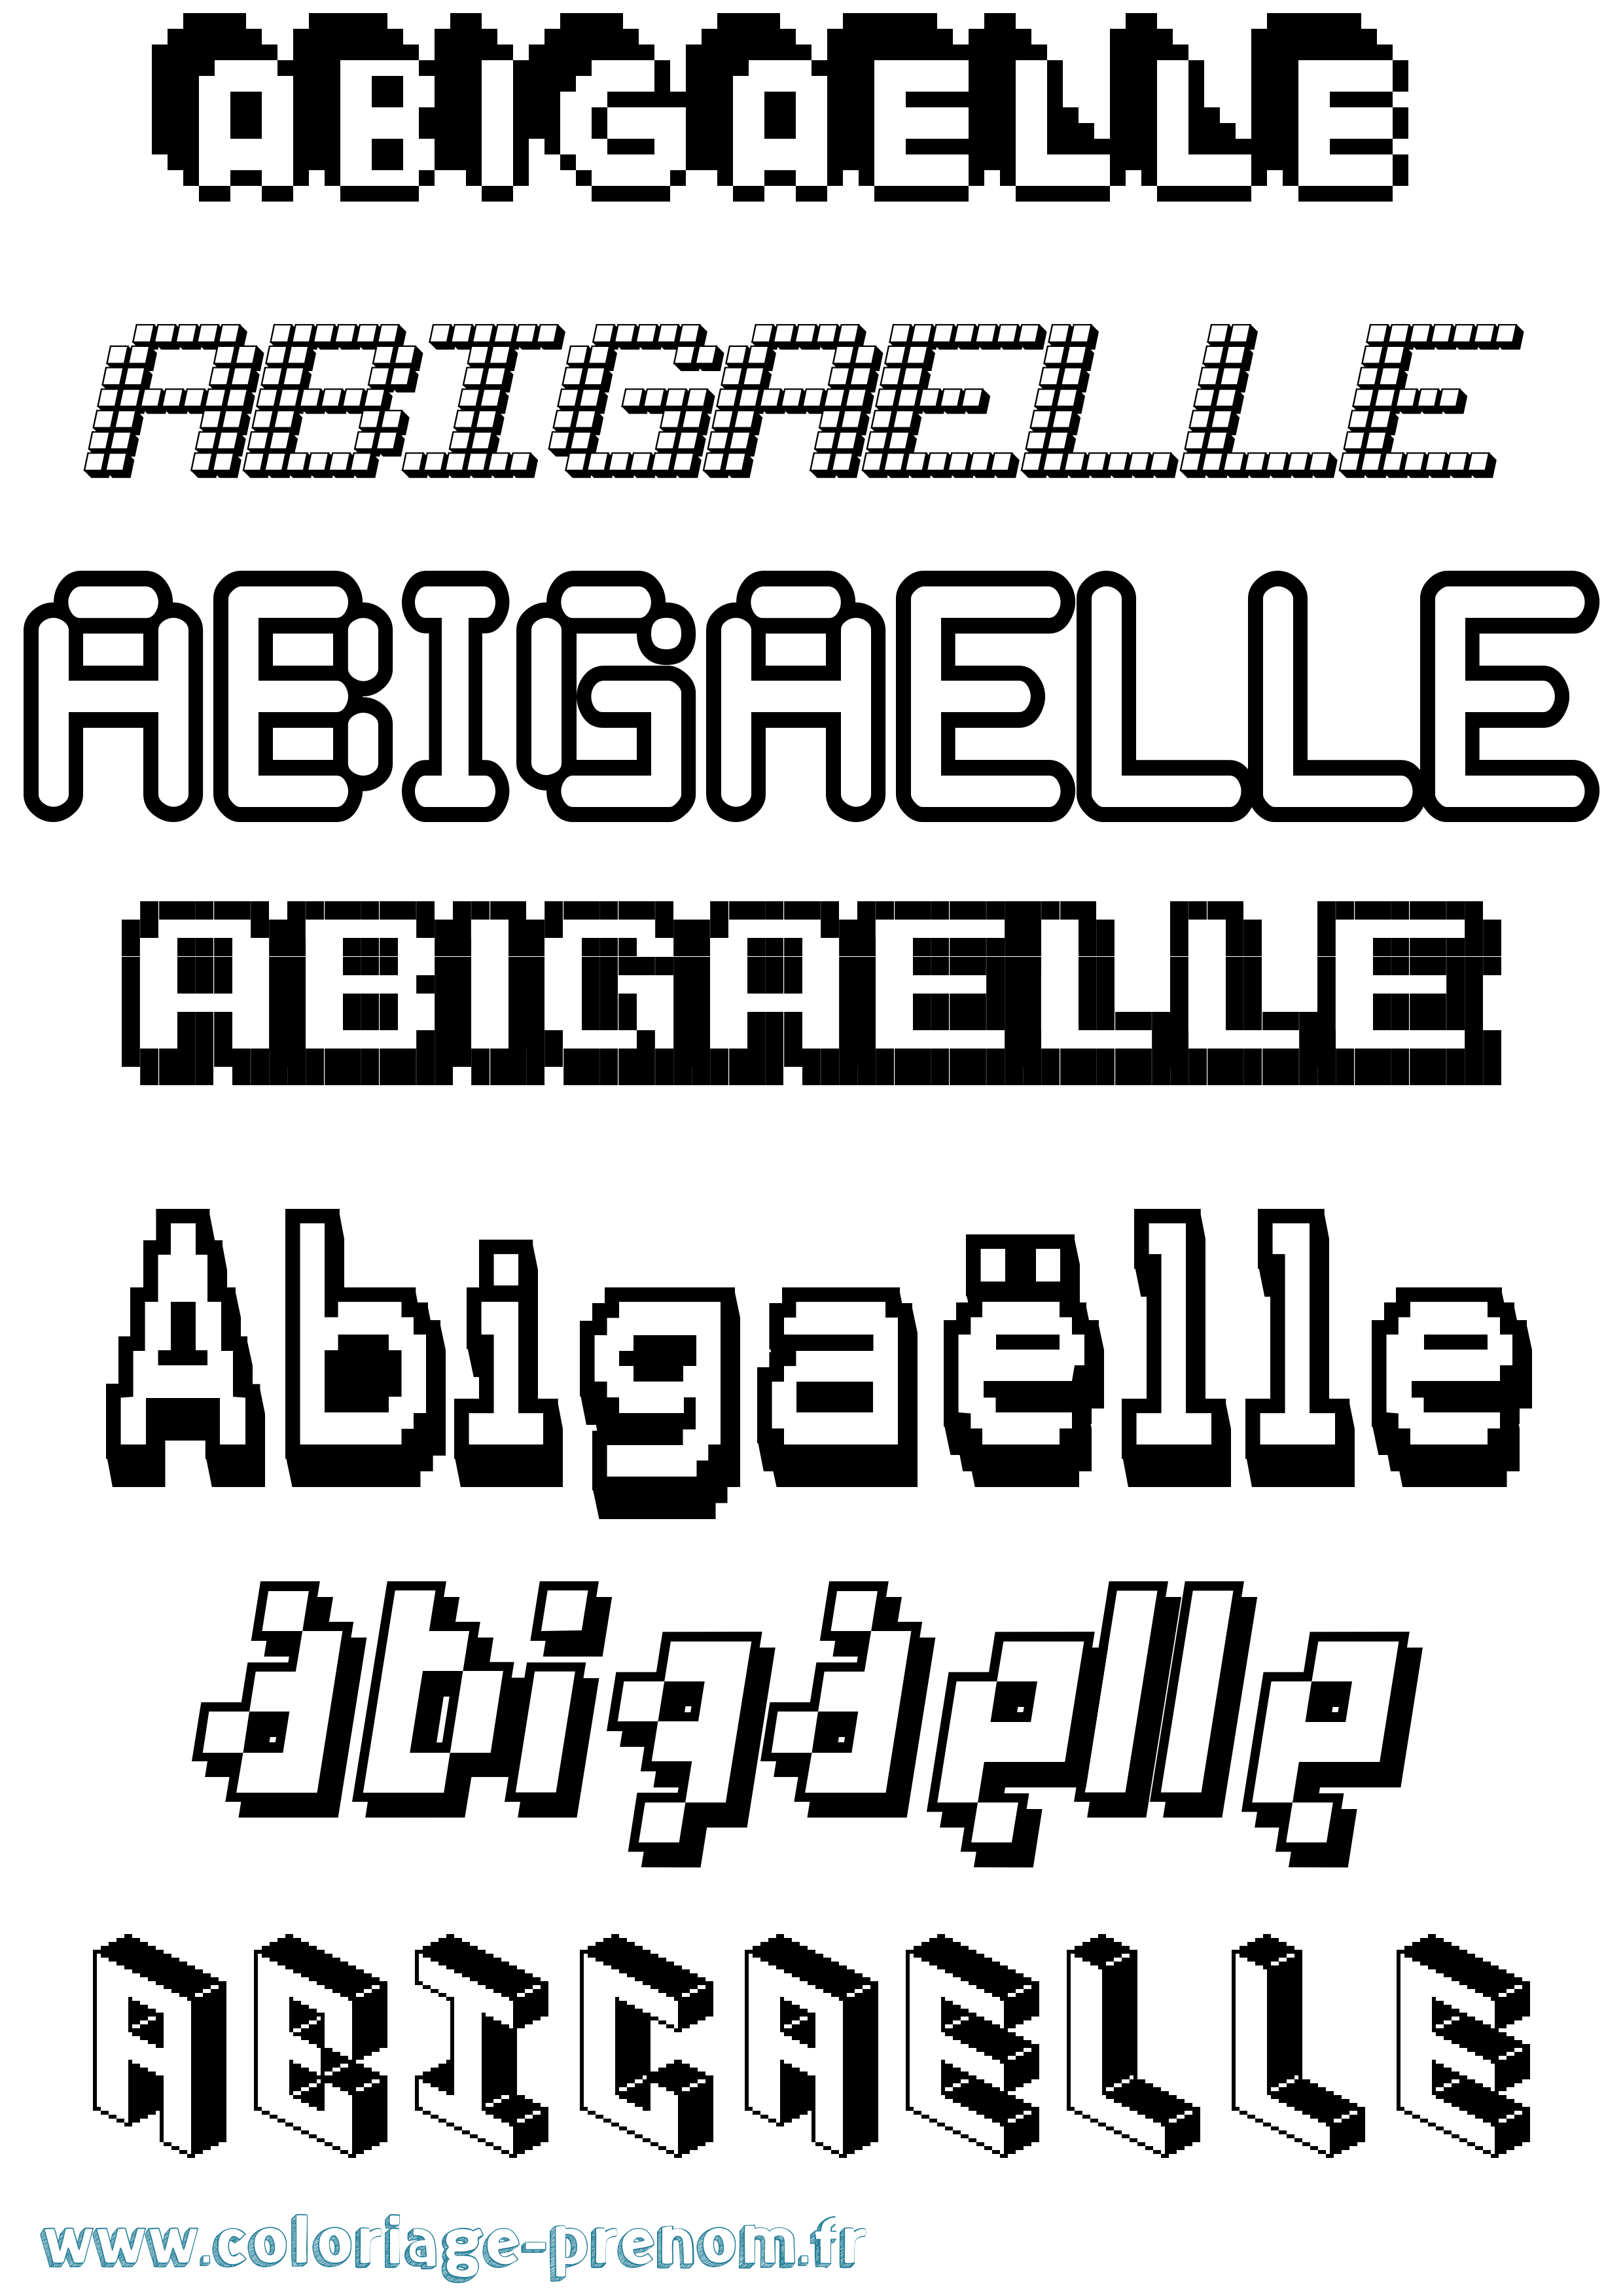 Coloriage prénom Abigaëlle Pixel